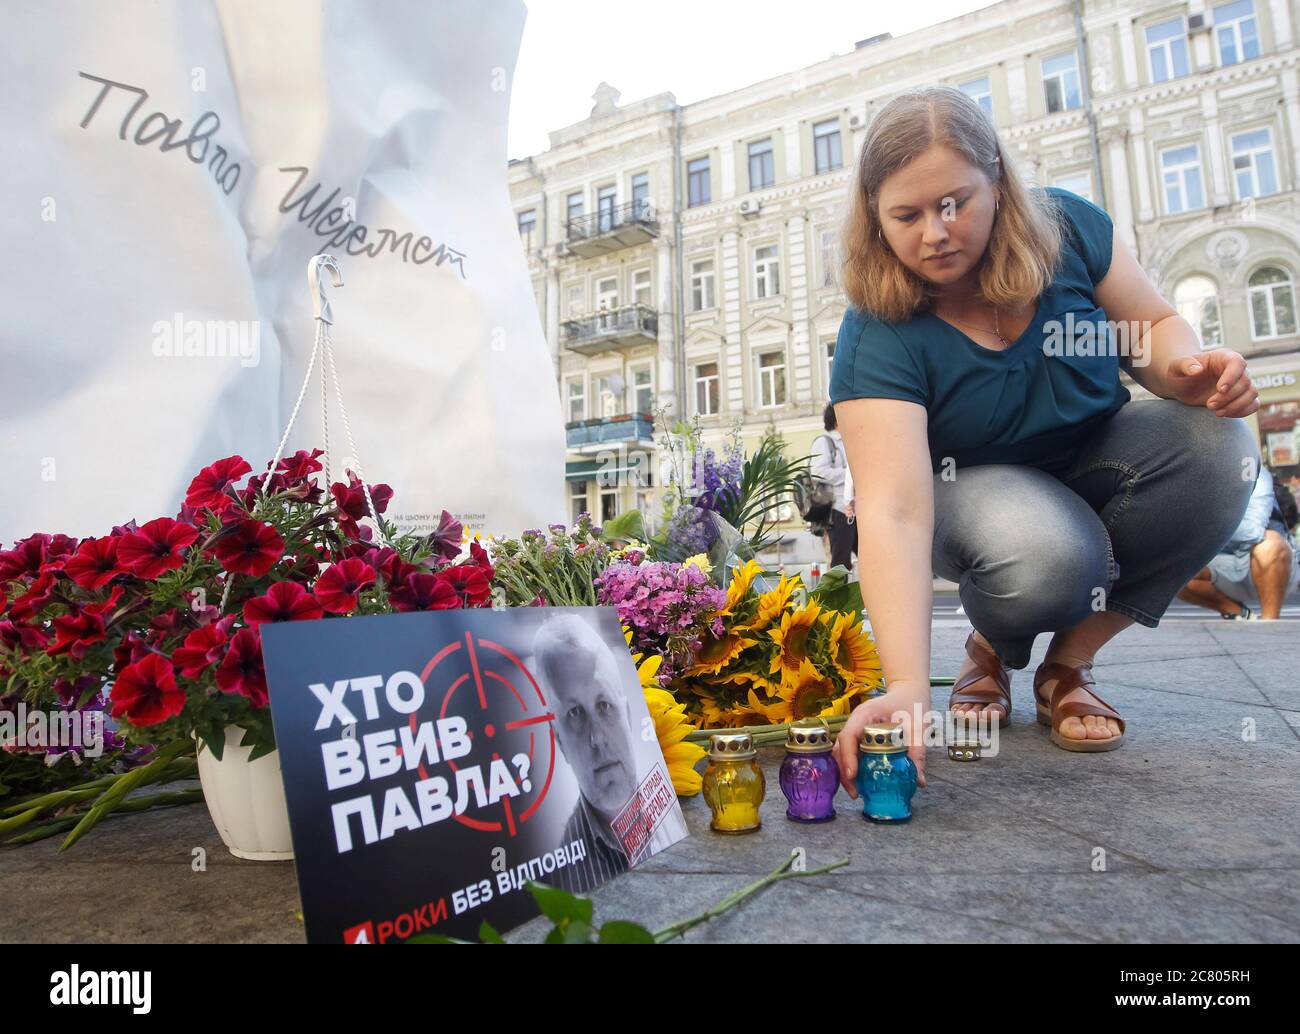 Una donna getta una candela per celebrare l'anniversario della morte del giornalista Pavel Sheremet al luogo della sua uccisione a Kiev.quattro anni più tardi i giornalisti e gli amici di Pavel Sheremet si sono riuniti di nuovo per onorare la sua memoria chiedendo un'inchiesta nel suo uccisione. Pavel Sheremet, giornalista russo e ucraino di origine bielorussa, 44 anni, che lavorava in Ucraina Pravda e radio Vesti, morì a Kiev il 20 luglio 2016 in un'esplosione di automobili. Nel dicembre 2019 il ministro ucraino degli interni Arsen Avakov ha detto che sono stati arrestati volontari di guerra sospettati di uccidere Pavel Sheremet. Gli investigatori di polizia sospettano un gruppo di cinque persone Foto Stock